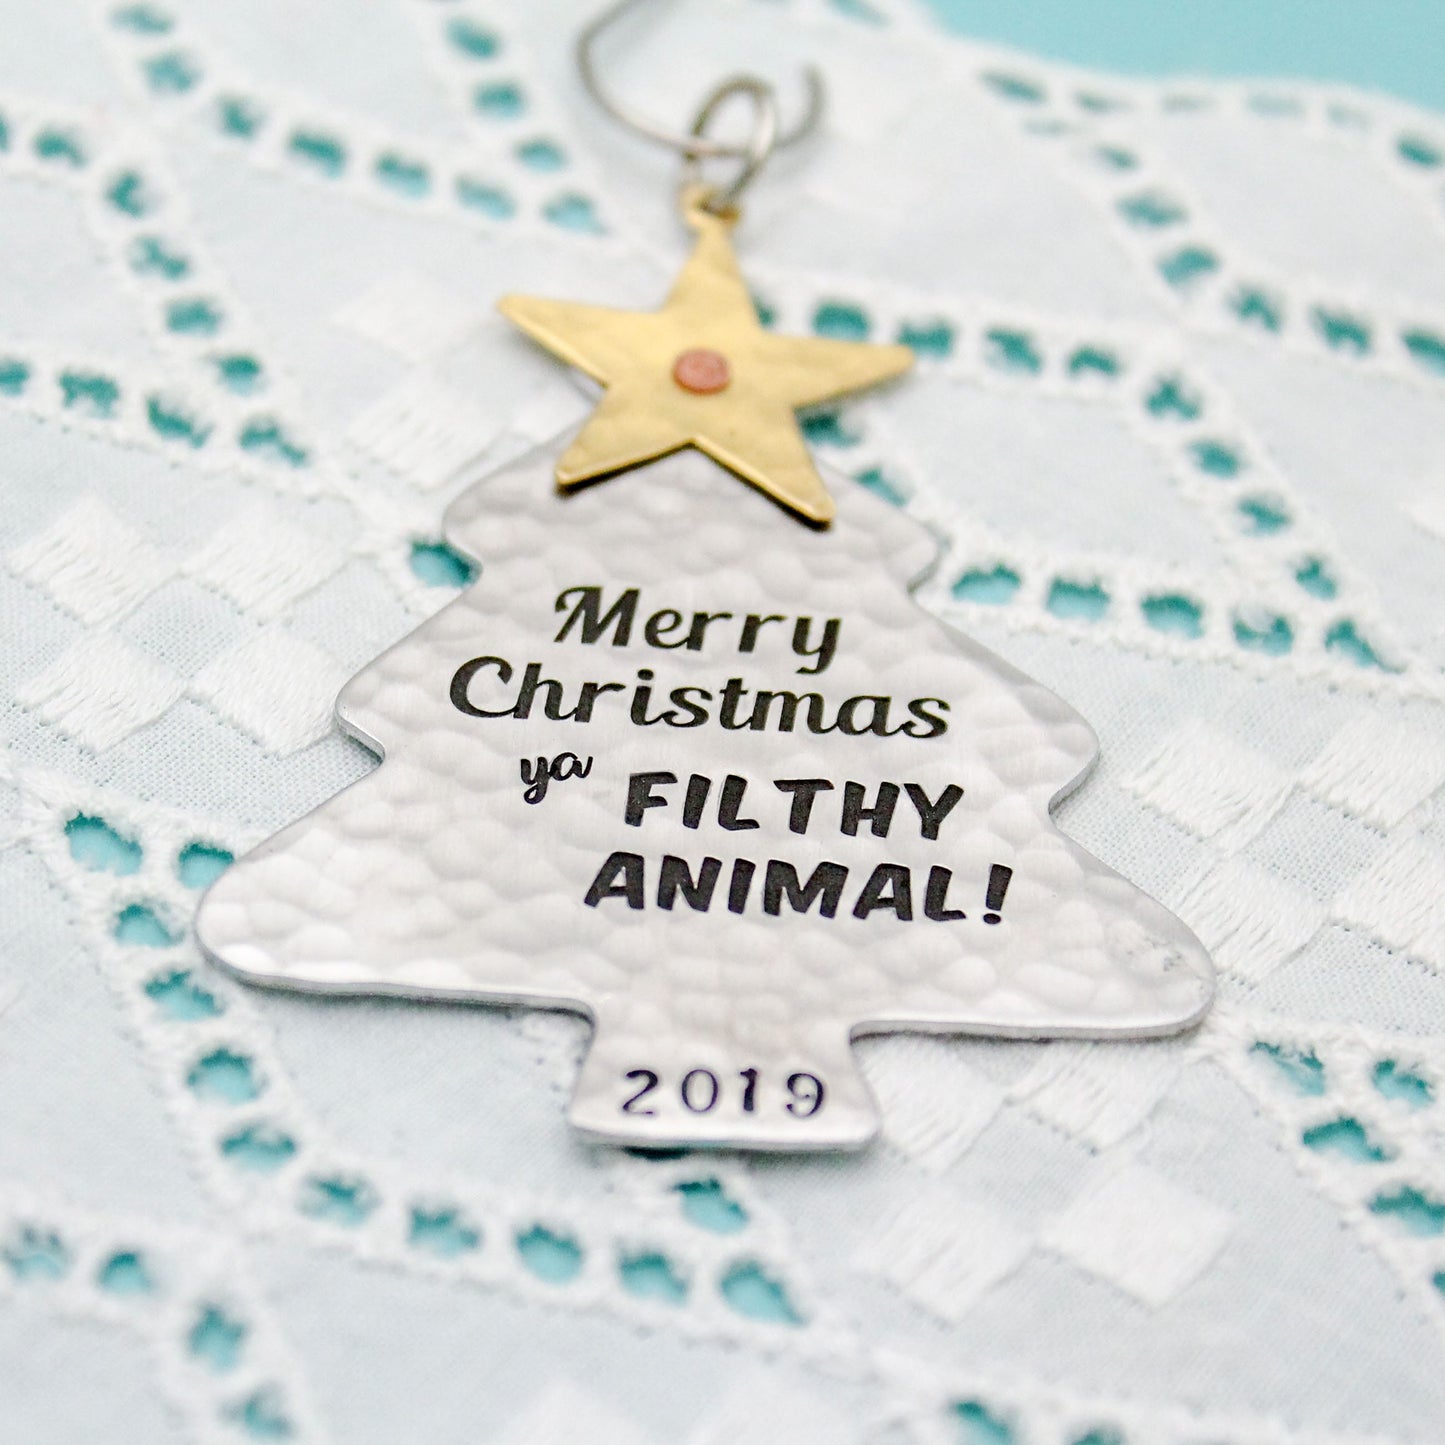 Merry Christmas Ya Filthy Animal Ornament, Home Alone Ornament, Christmas Tree Ornament in Aluminum, Unique Christmas Tree Ornament Gift